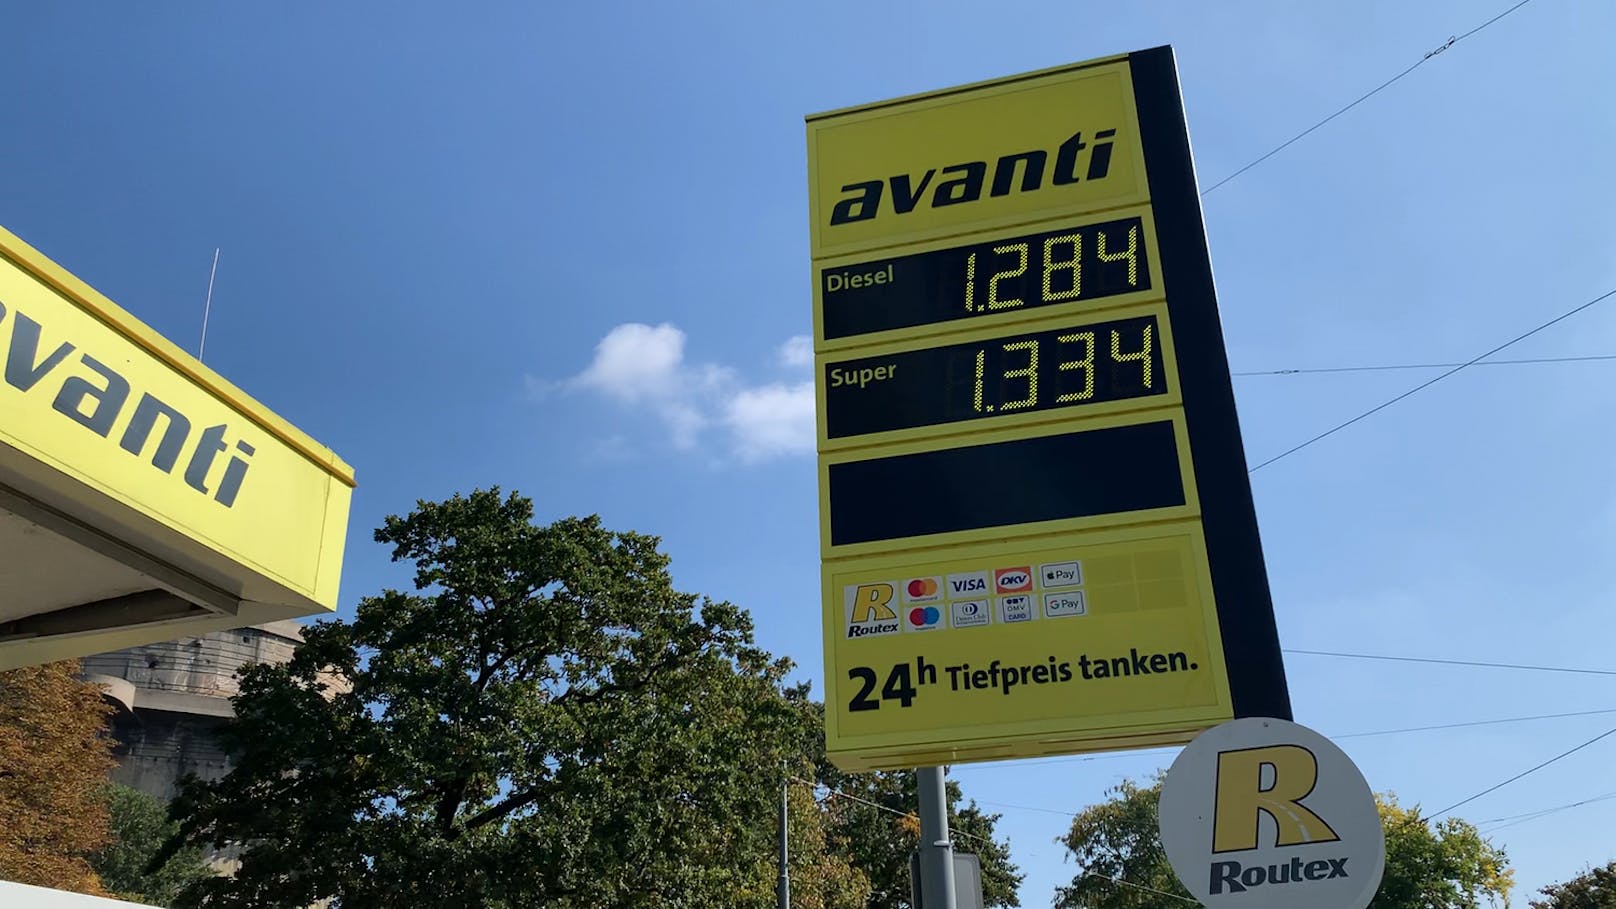 Bei einer Avanti-Tankstelle in Wien liegt der Preis für Super 95 bei 1,334 Euro pro Liter